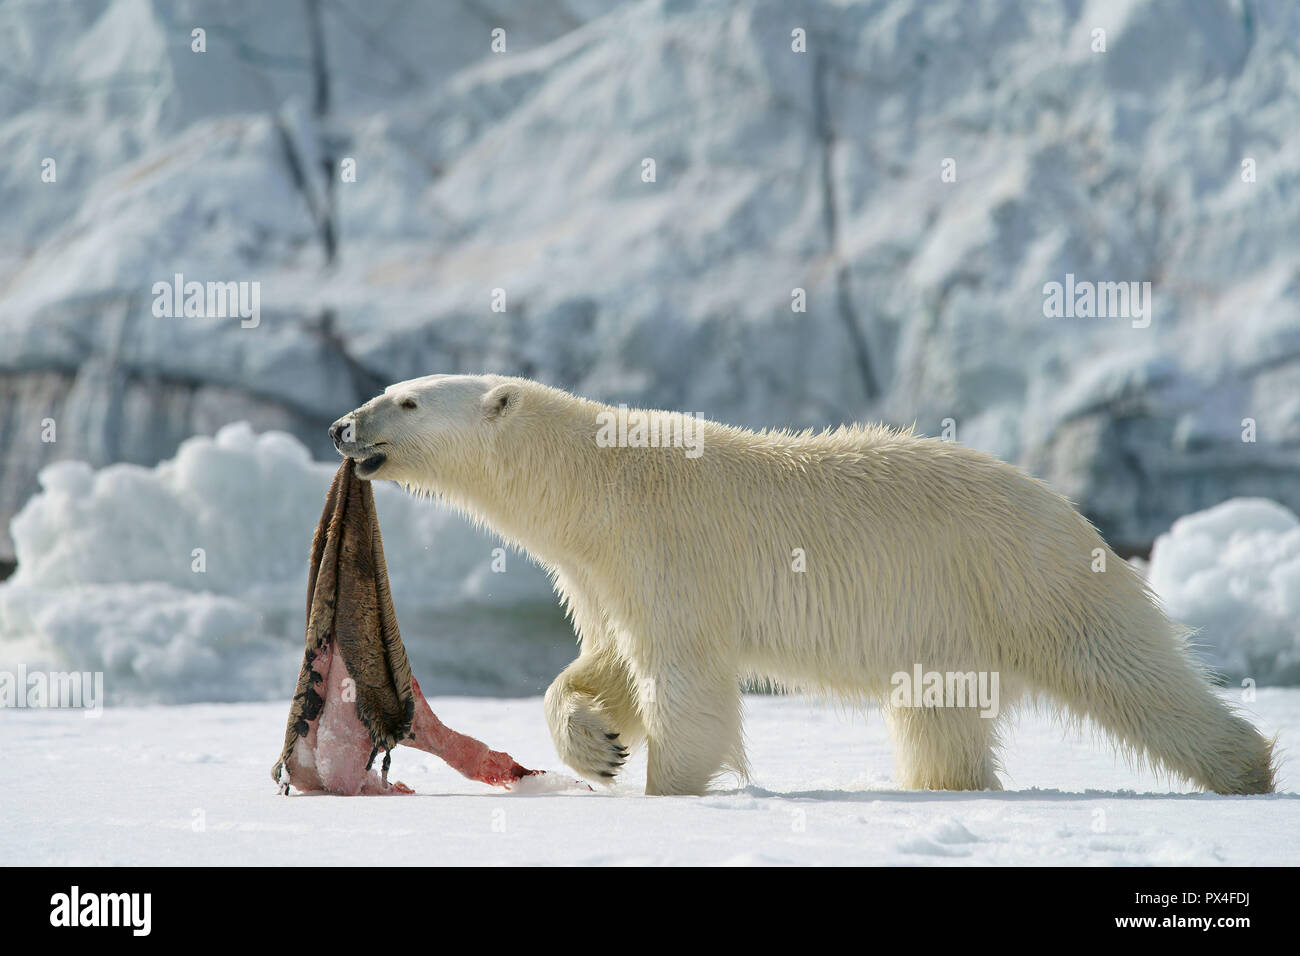 Orso polare (Ursus maritimus) con guarnizione catturata pelle, Svalbard artico norvegese, Norvegia Foto Stock